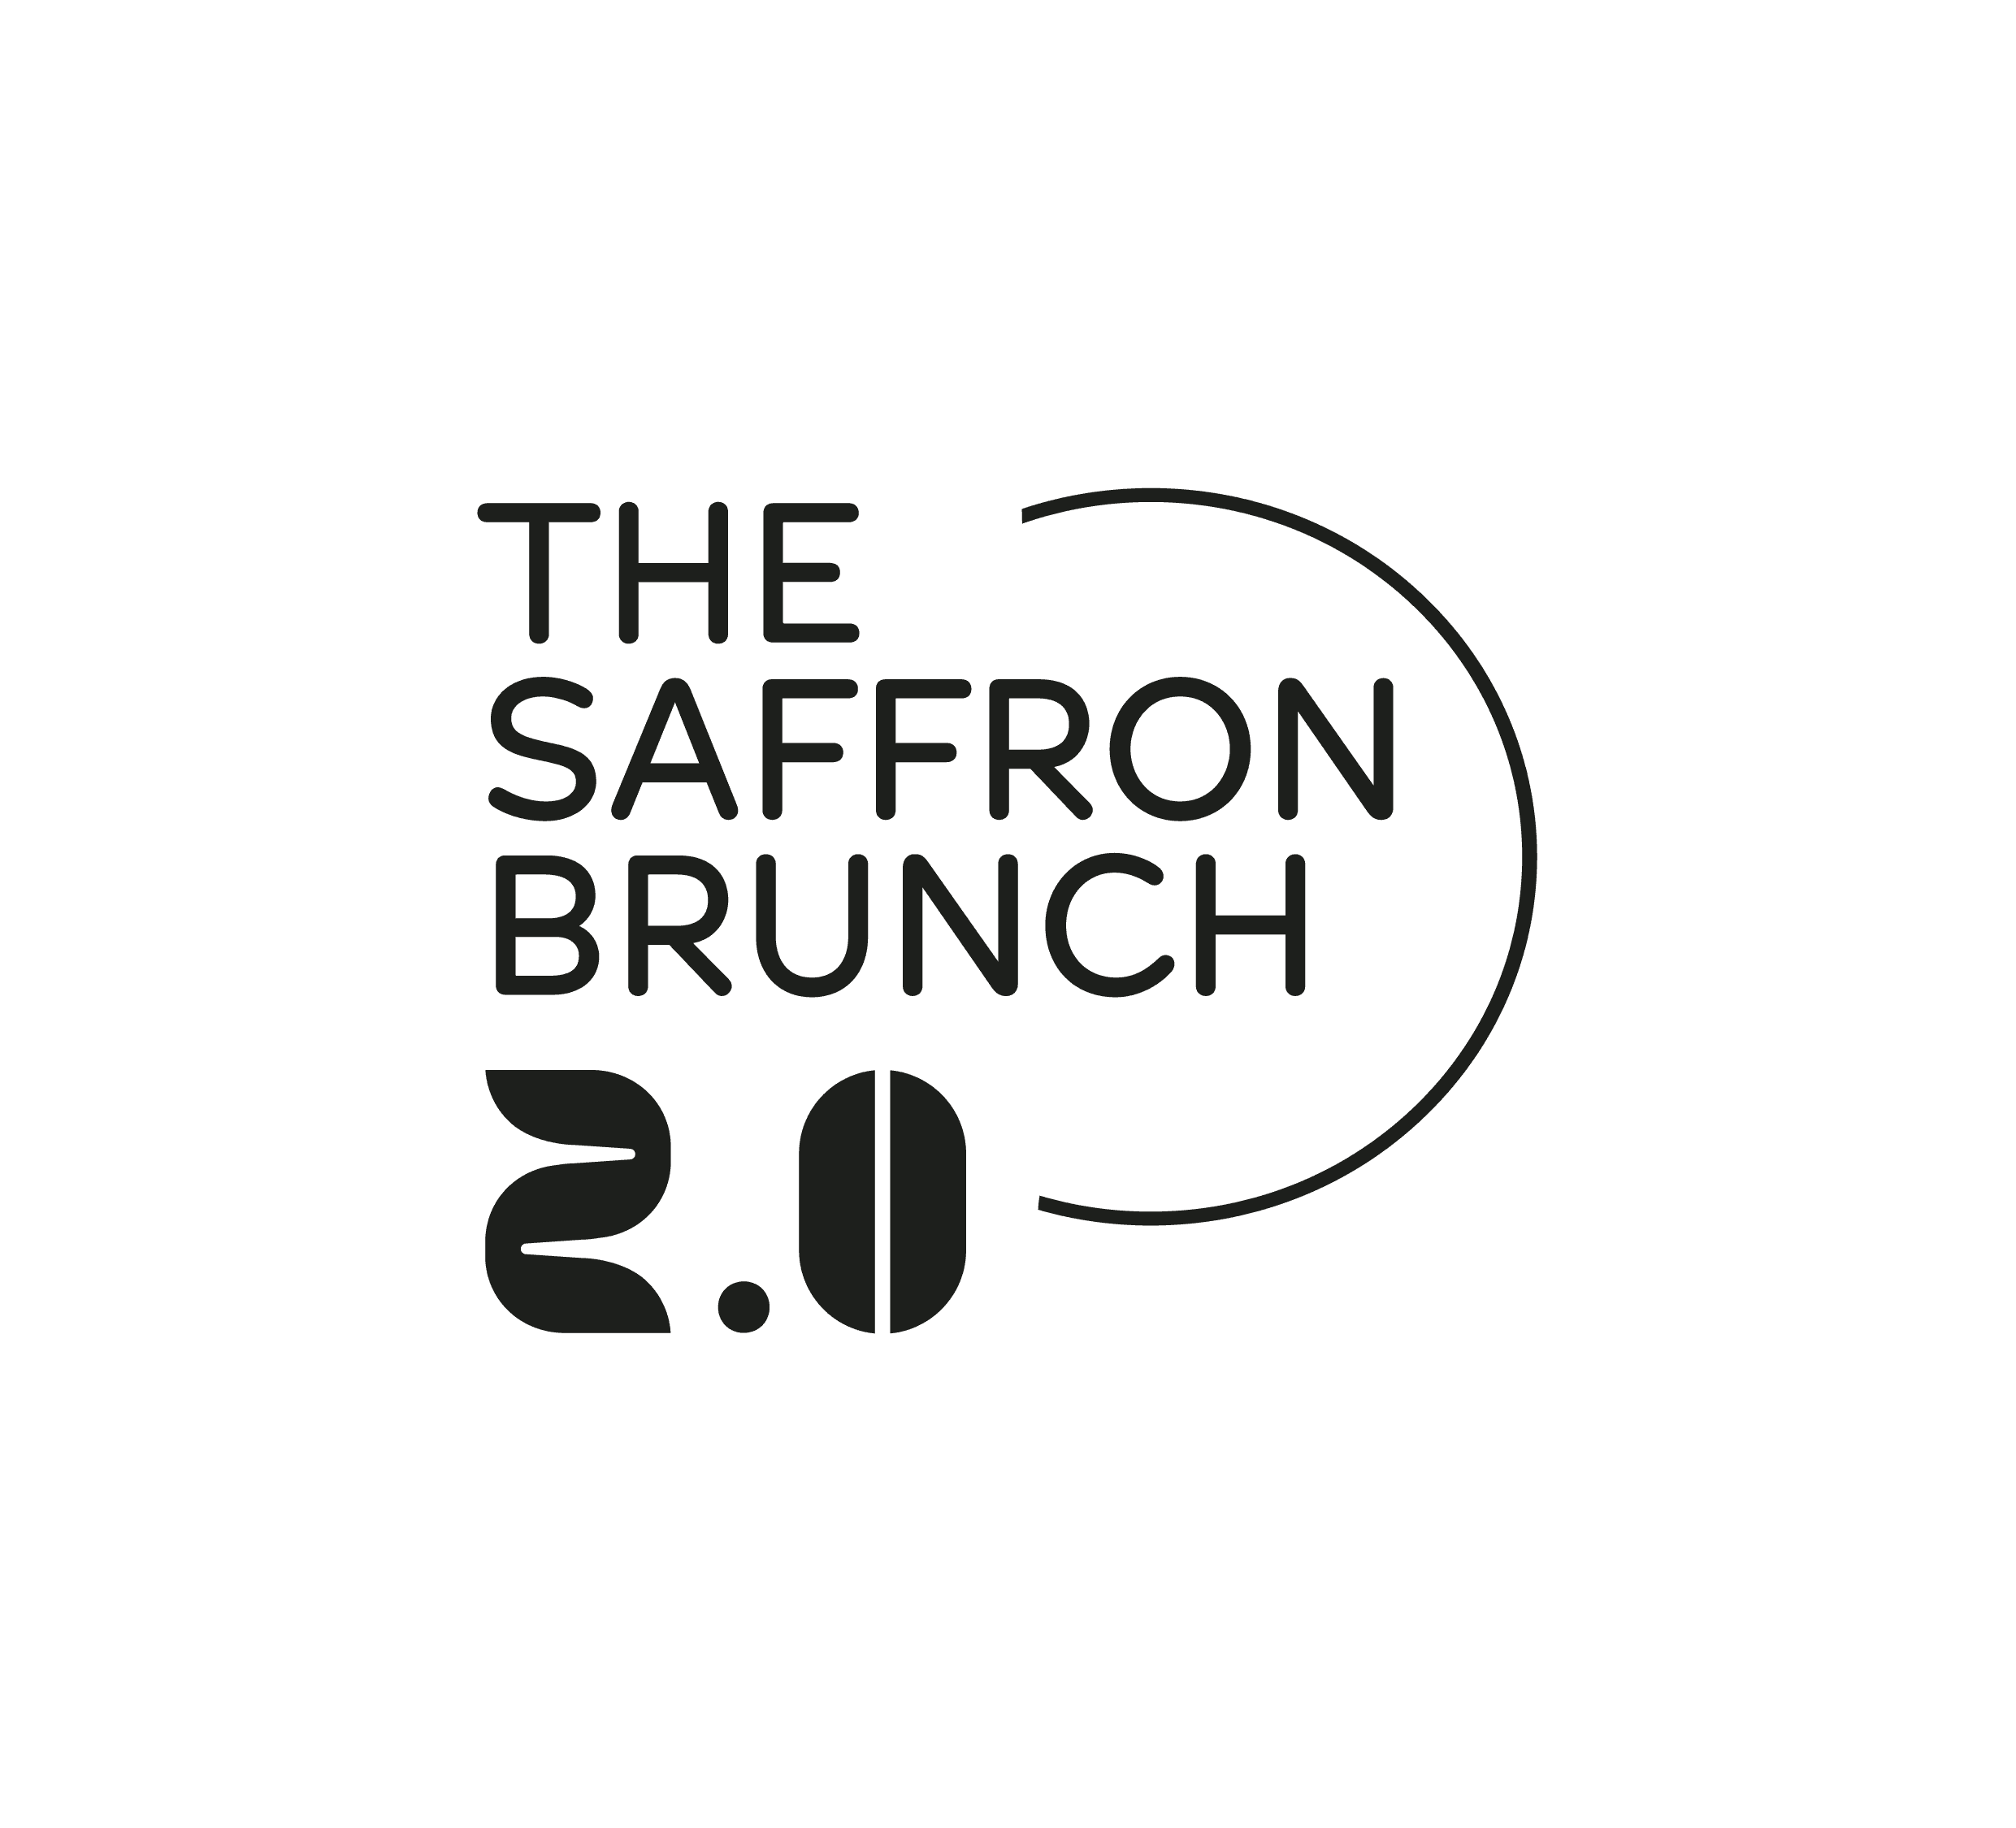 Saffron Brunch - The Craziest Party Brunch